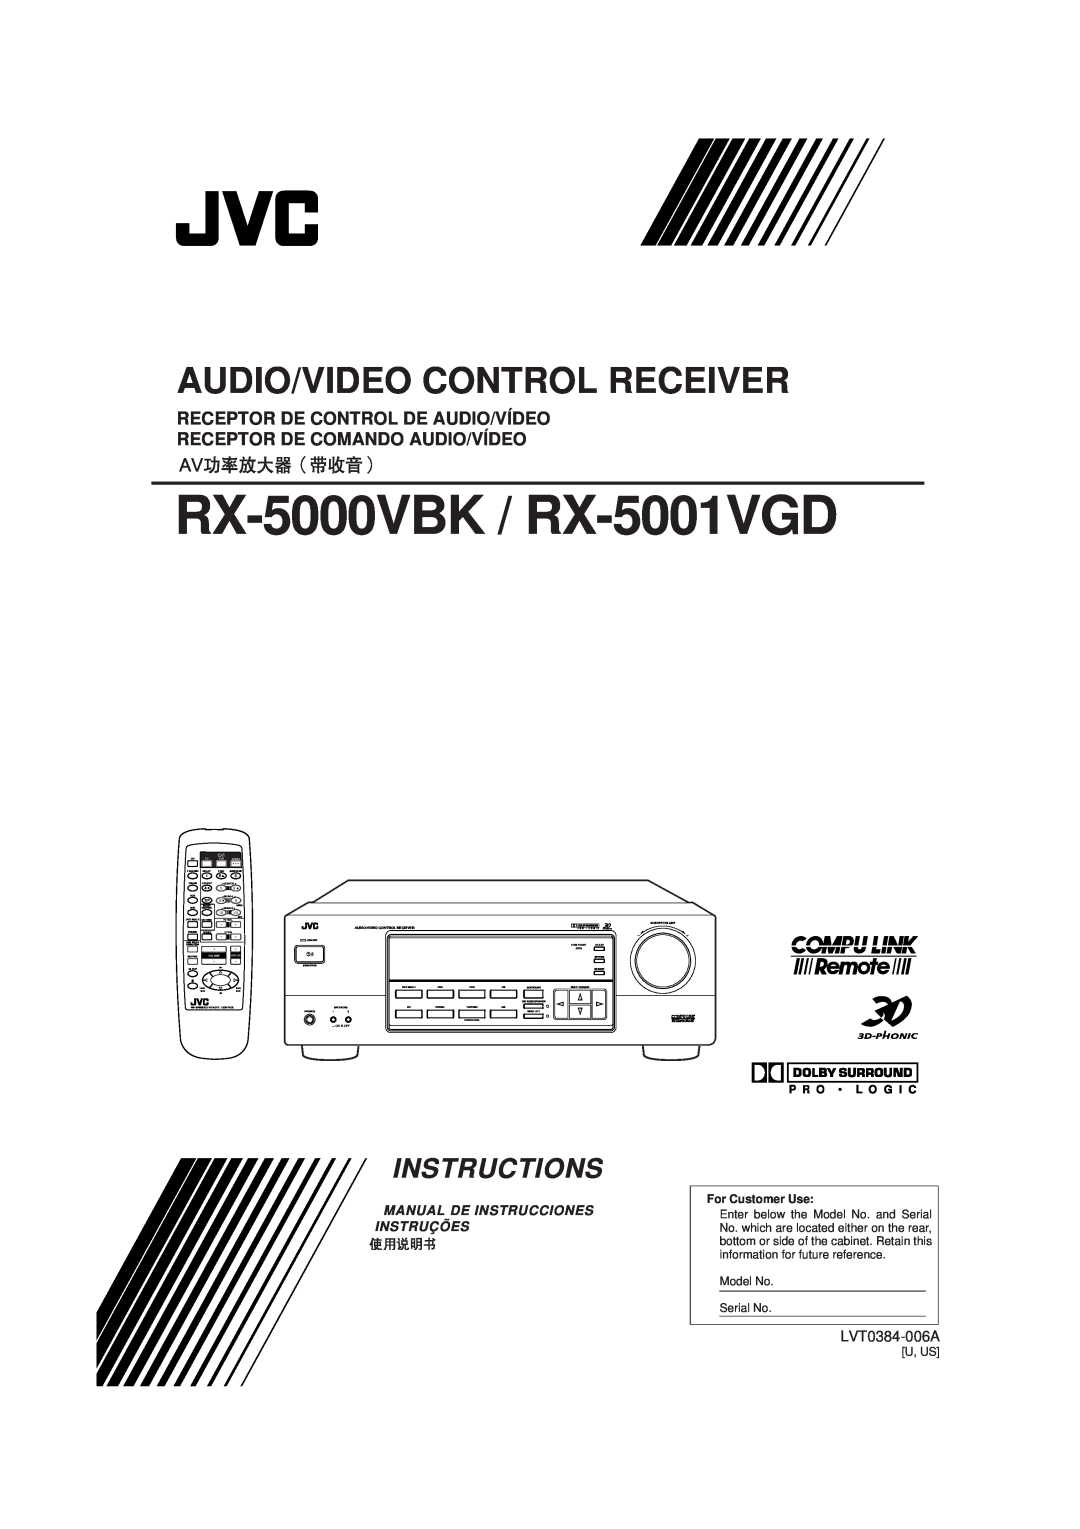 JVC manual RX-5000VBK / RX-5001VGD, Audio/Video Control Receiver, Instructions, Receptor De Control De Audio/Vídeo 